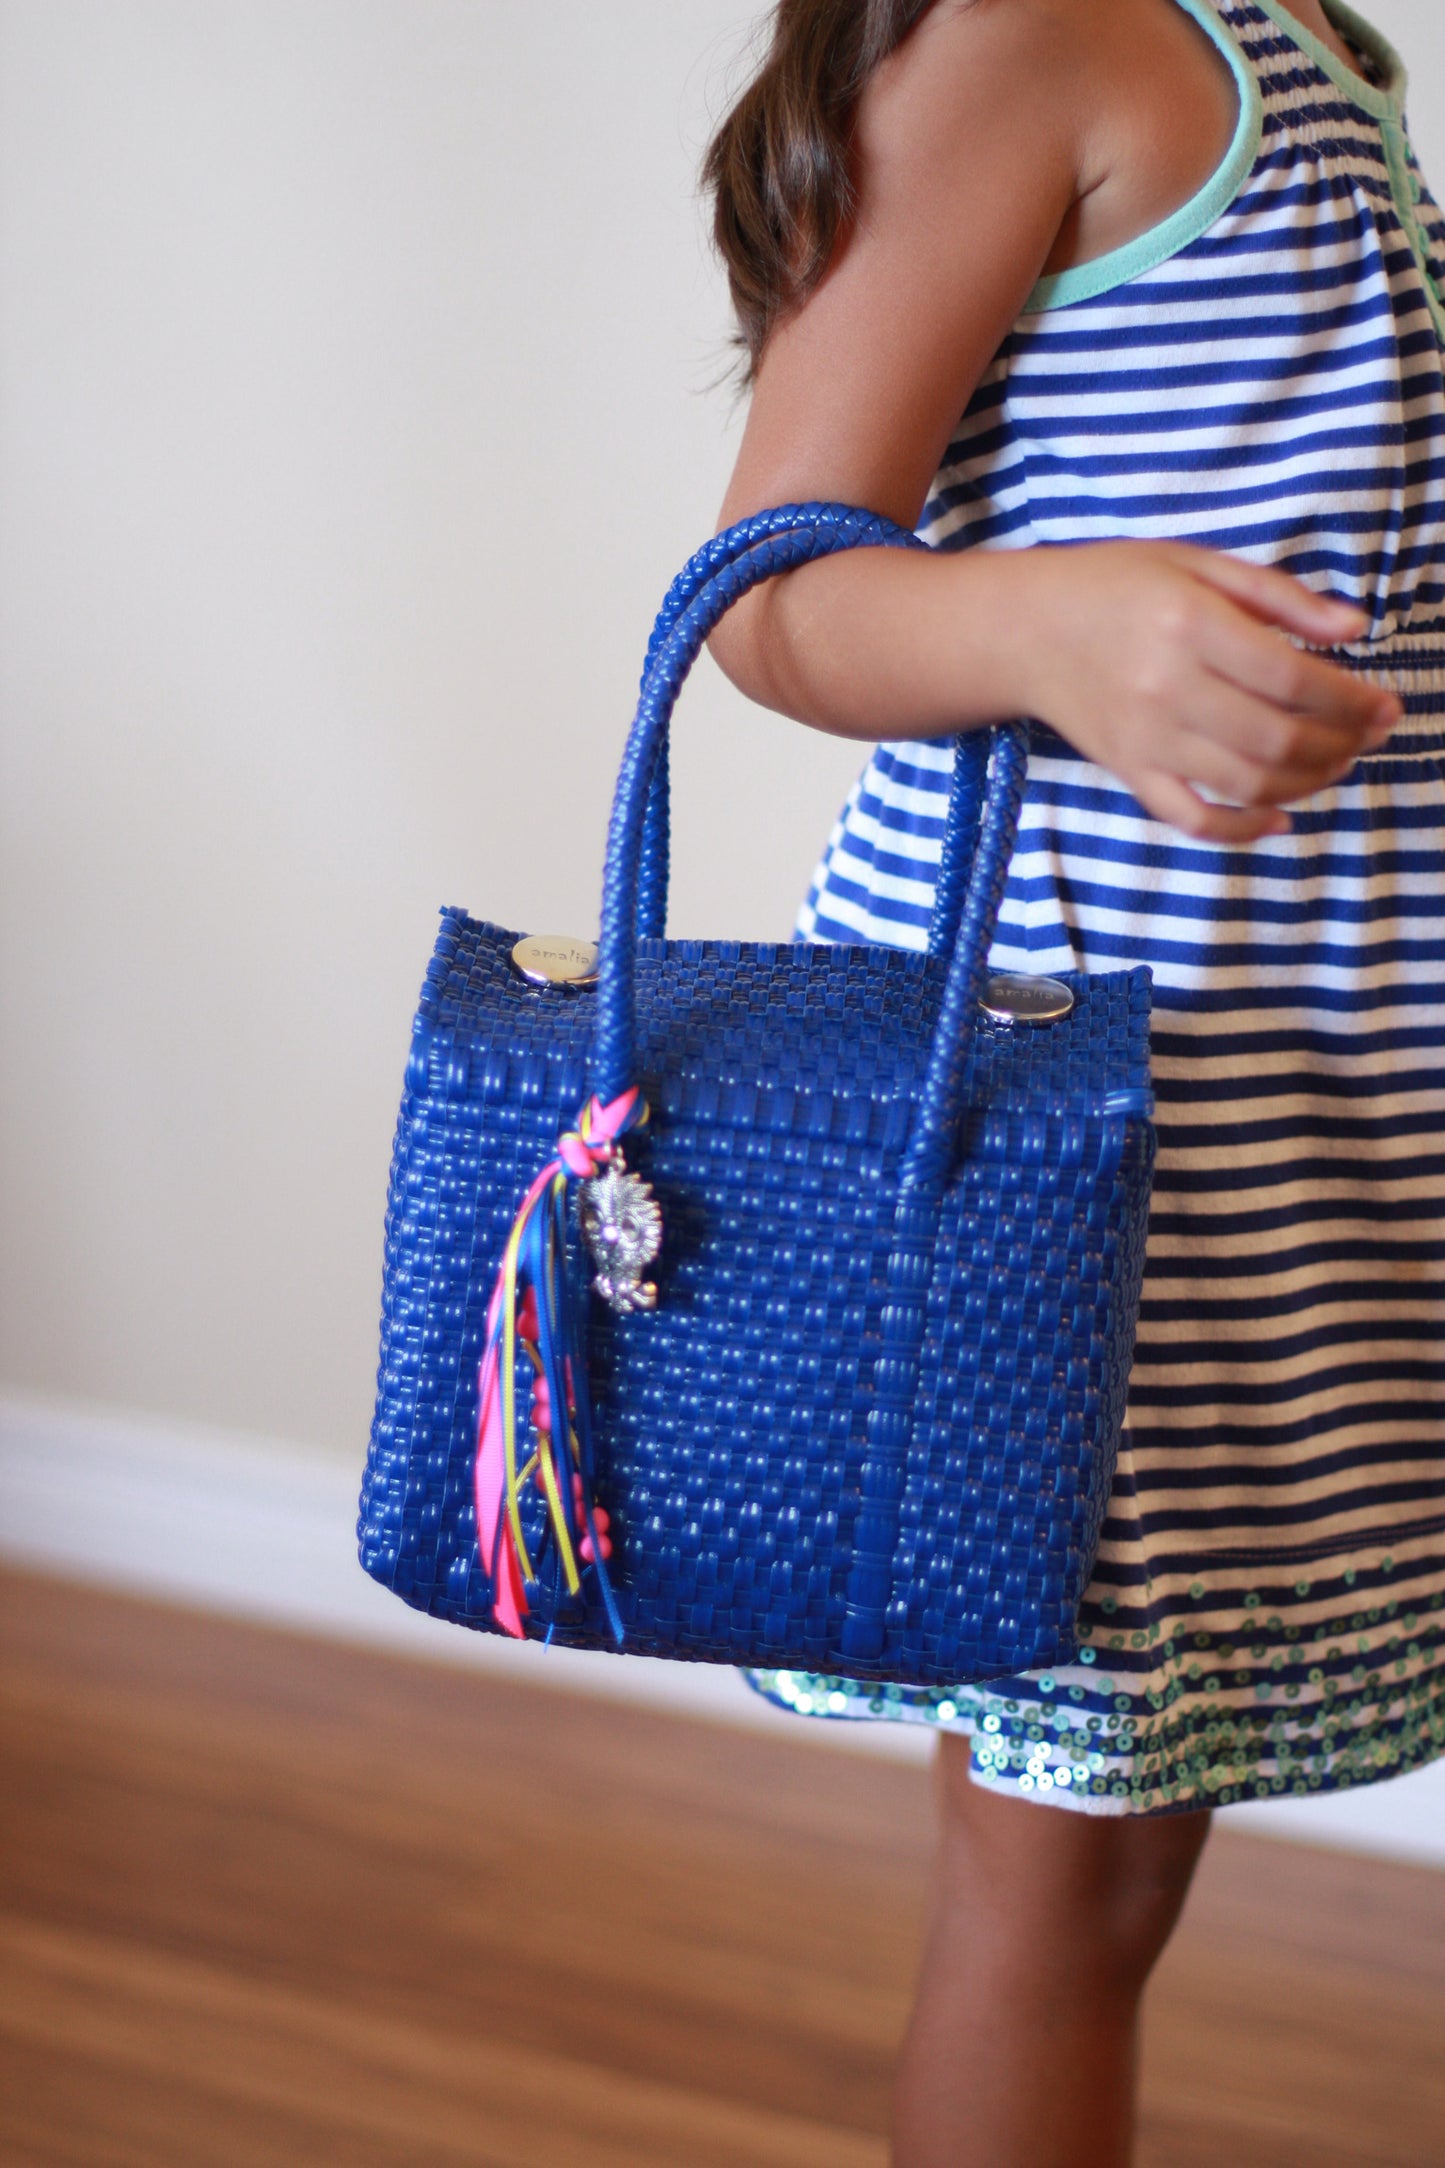 Buy 1, get 2 with 50% off: Beige & Colors Handbags Bundle